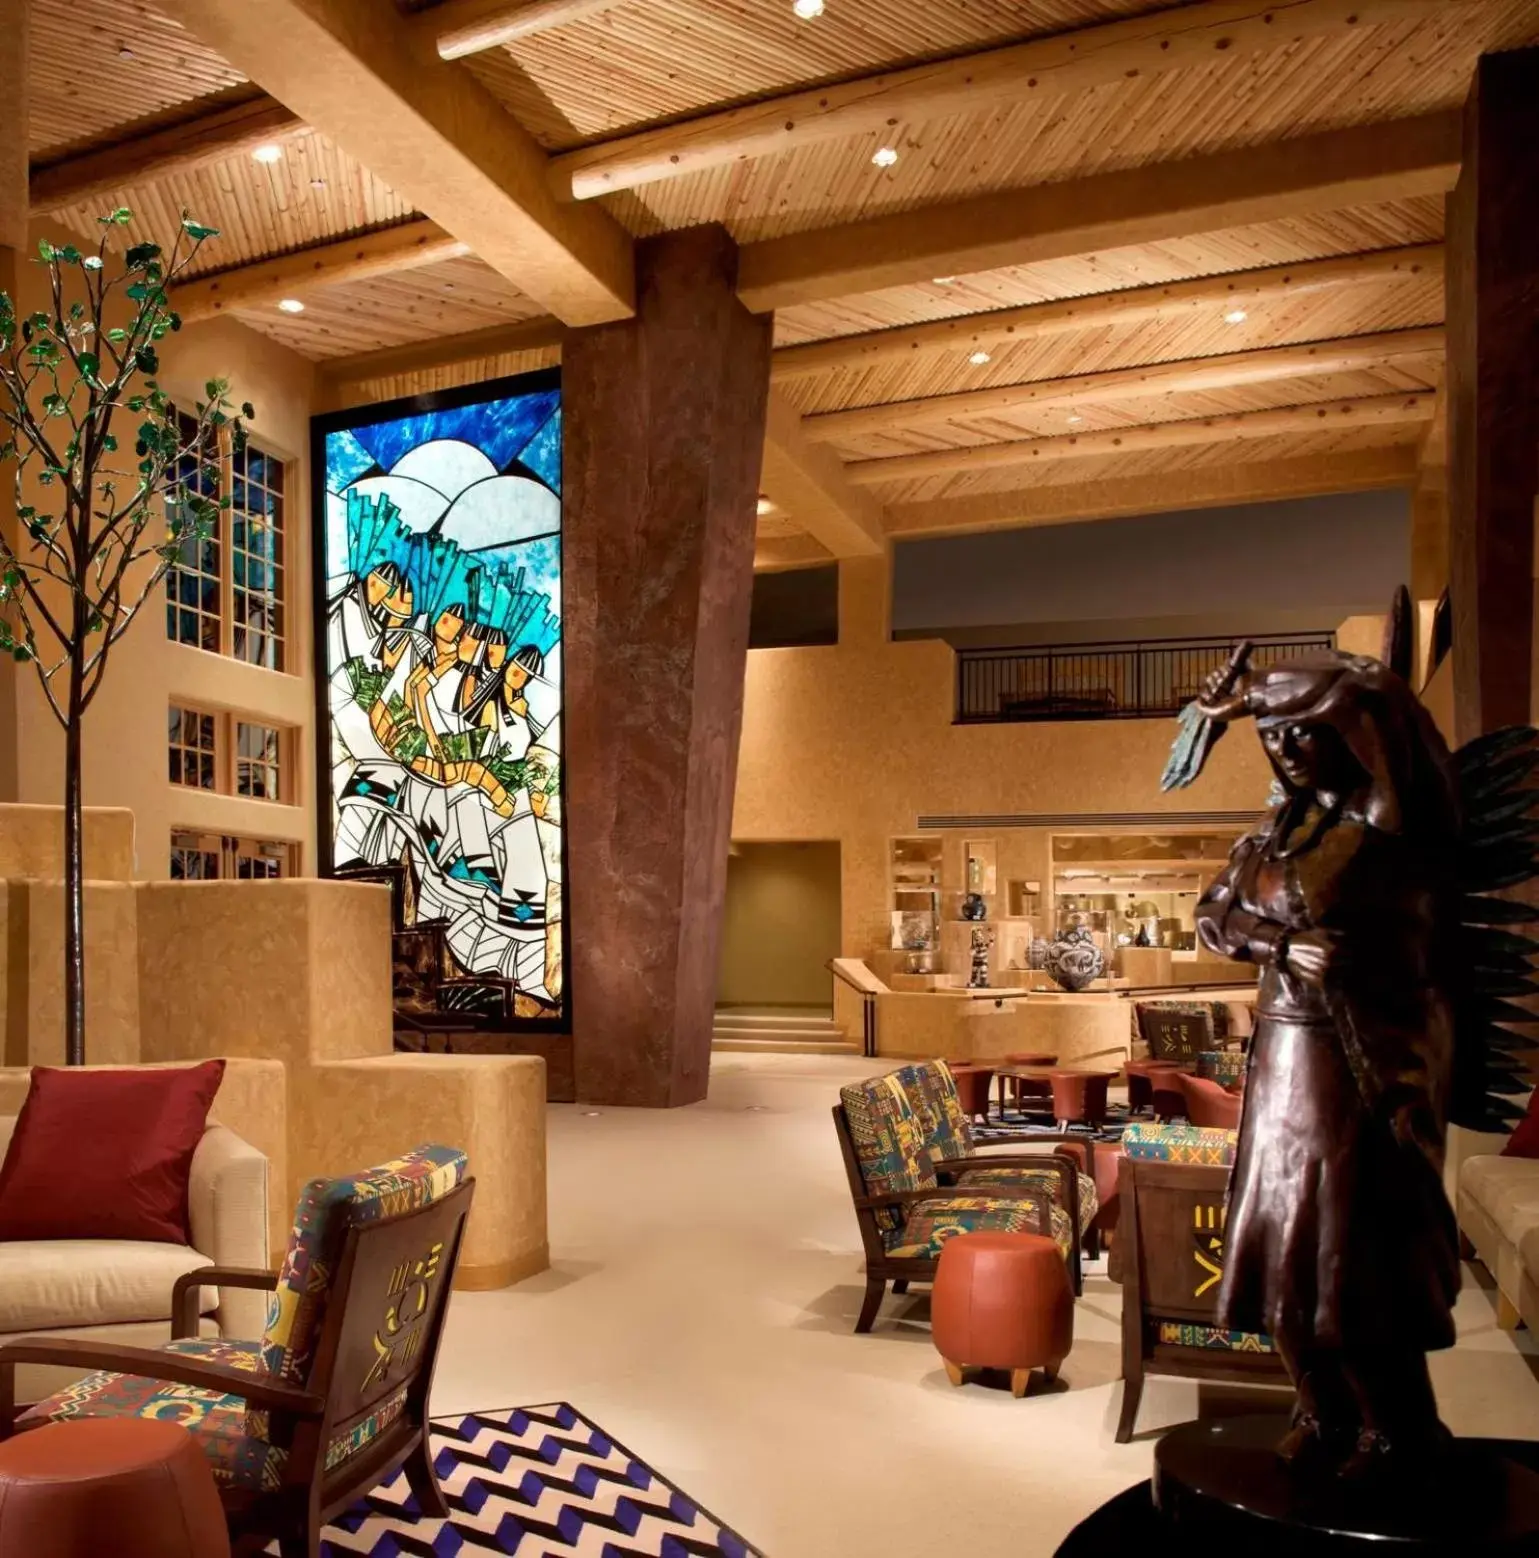 Lobby or reception in Hilton Santa Fe Buffalo Thunder